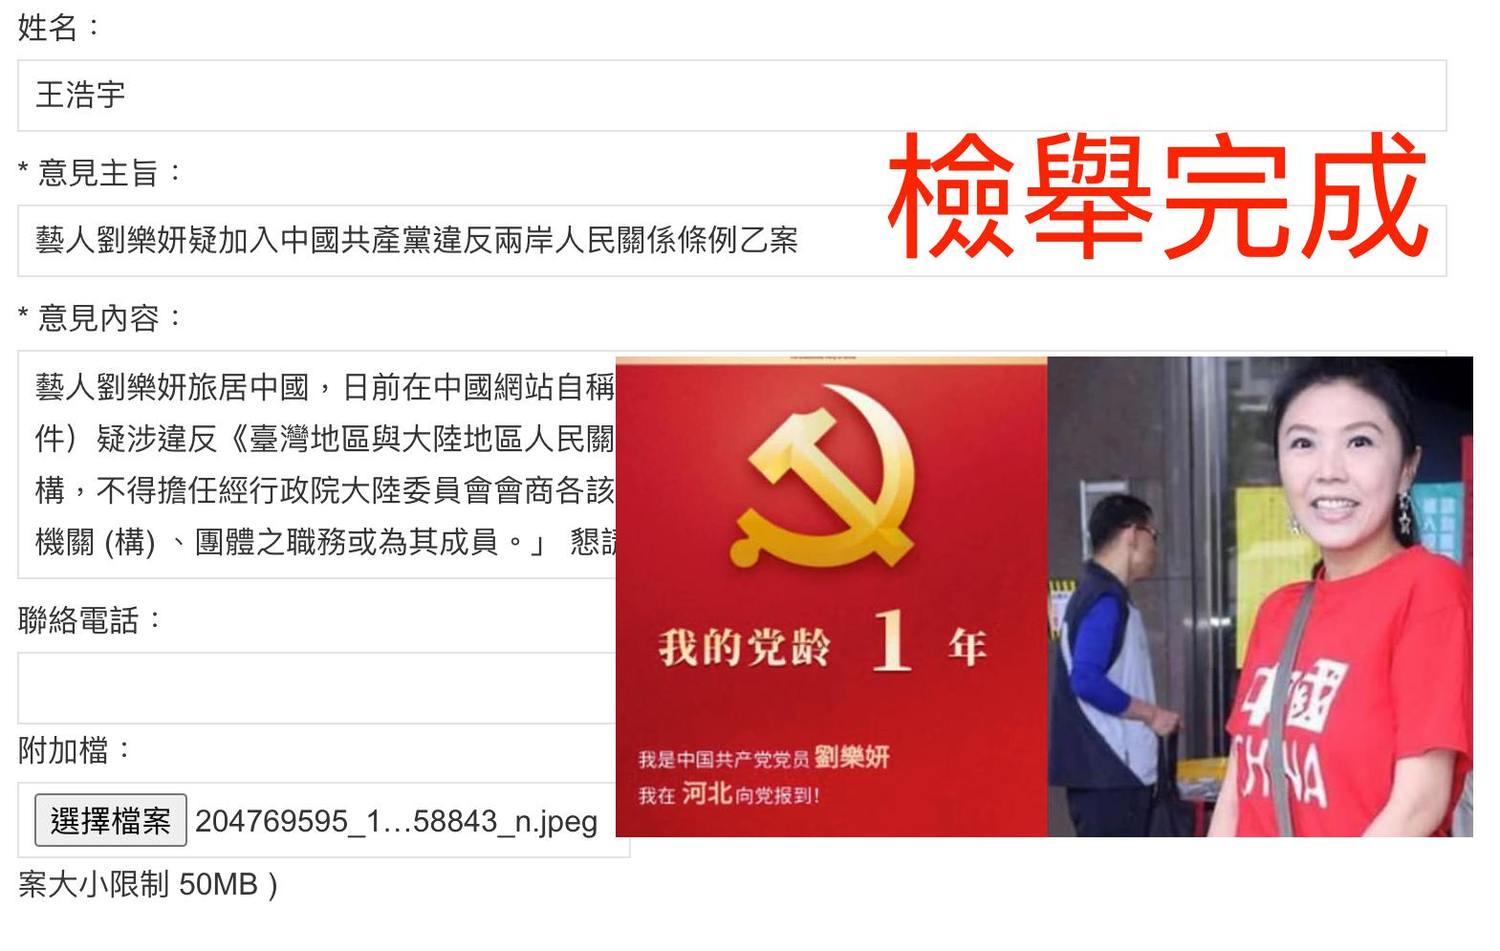 劉樂妍｢加入共產黨｣被警告別鬧 王浩宇舉報：日行一善幫她回歸祖國